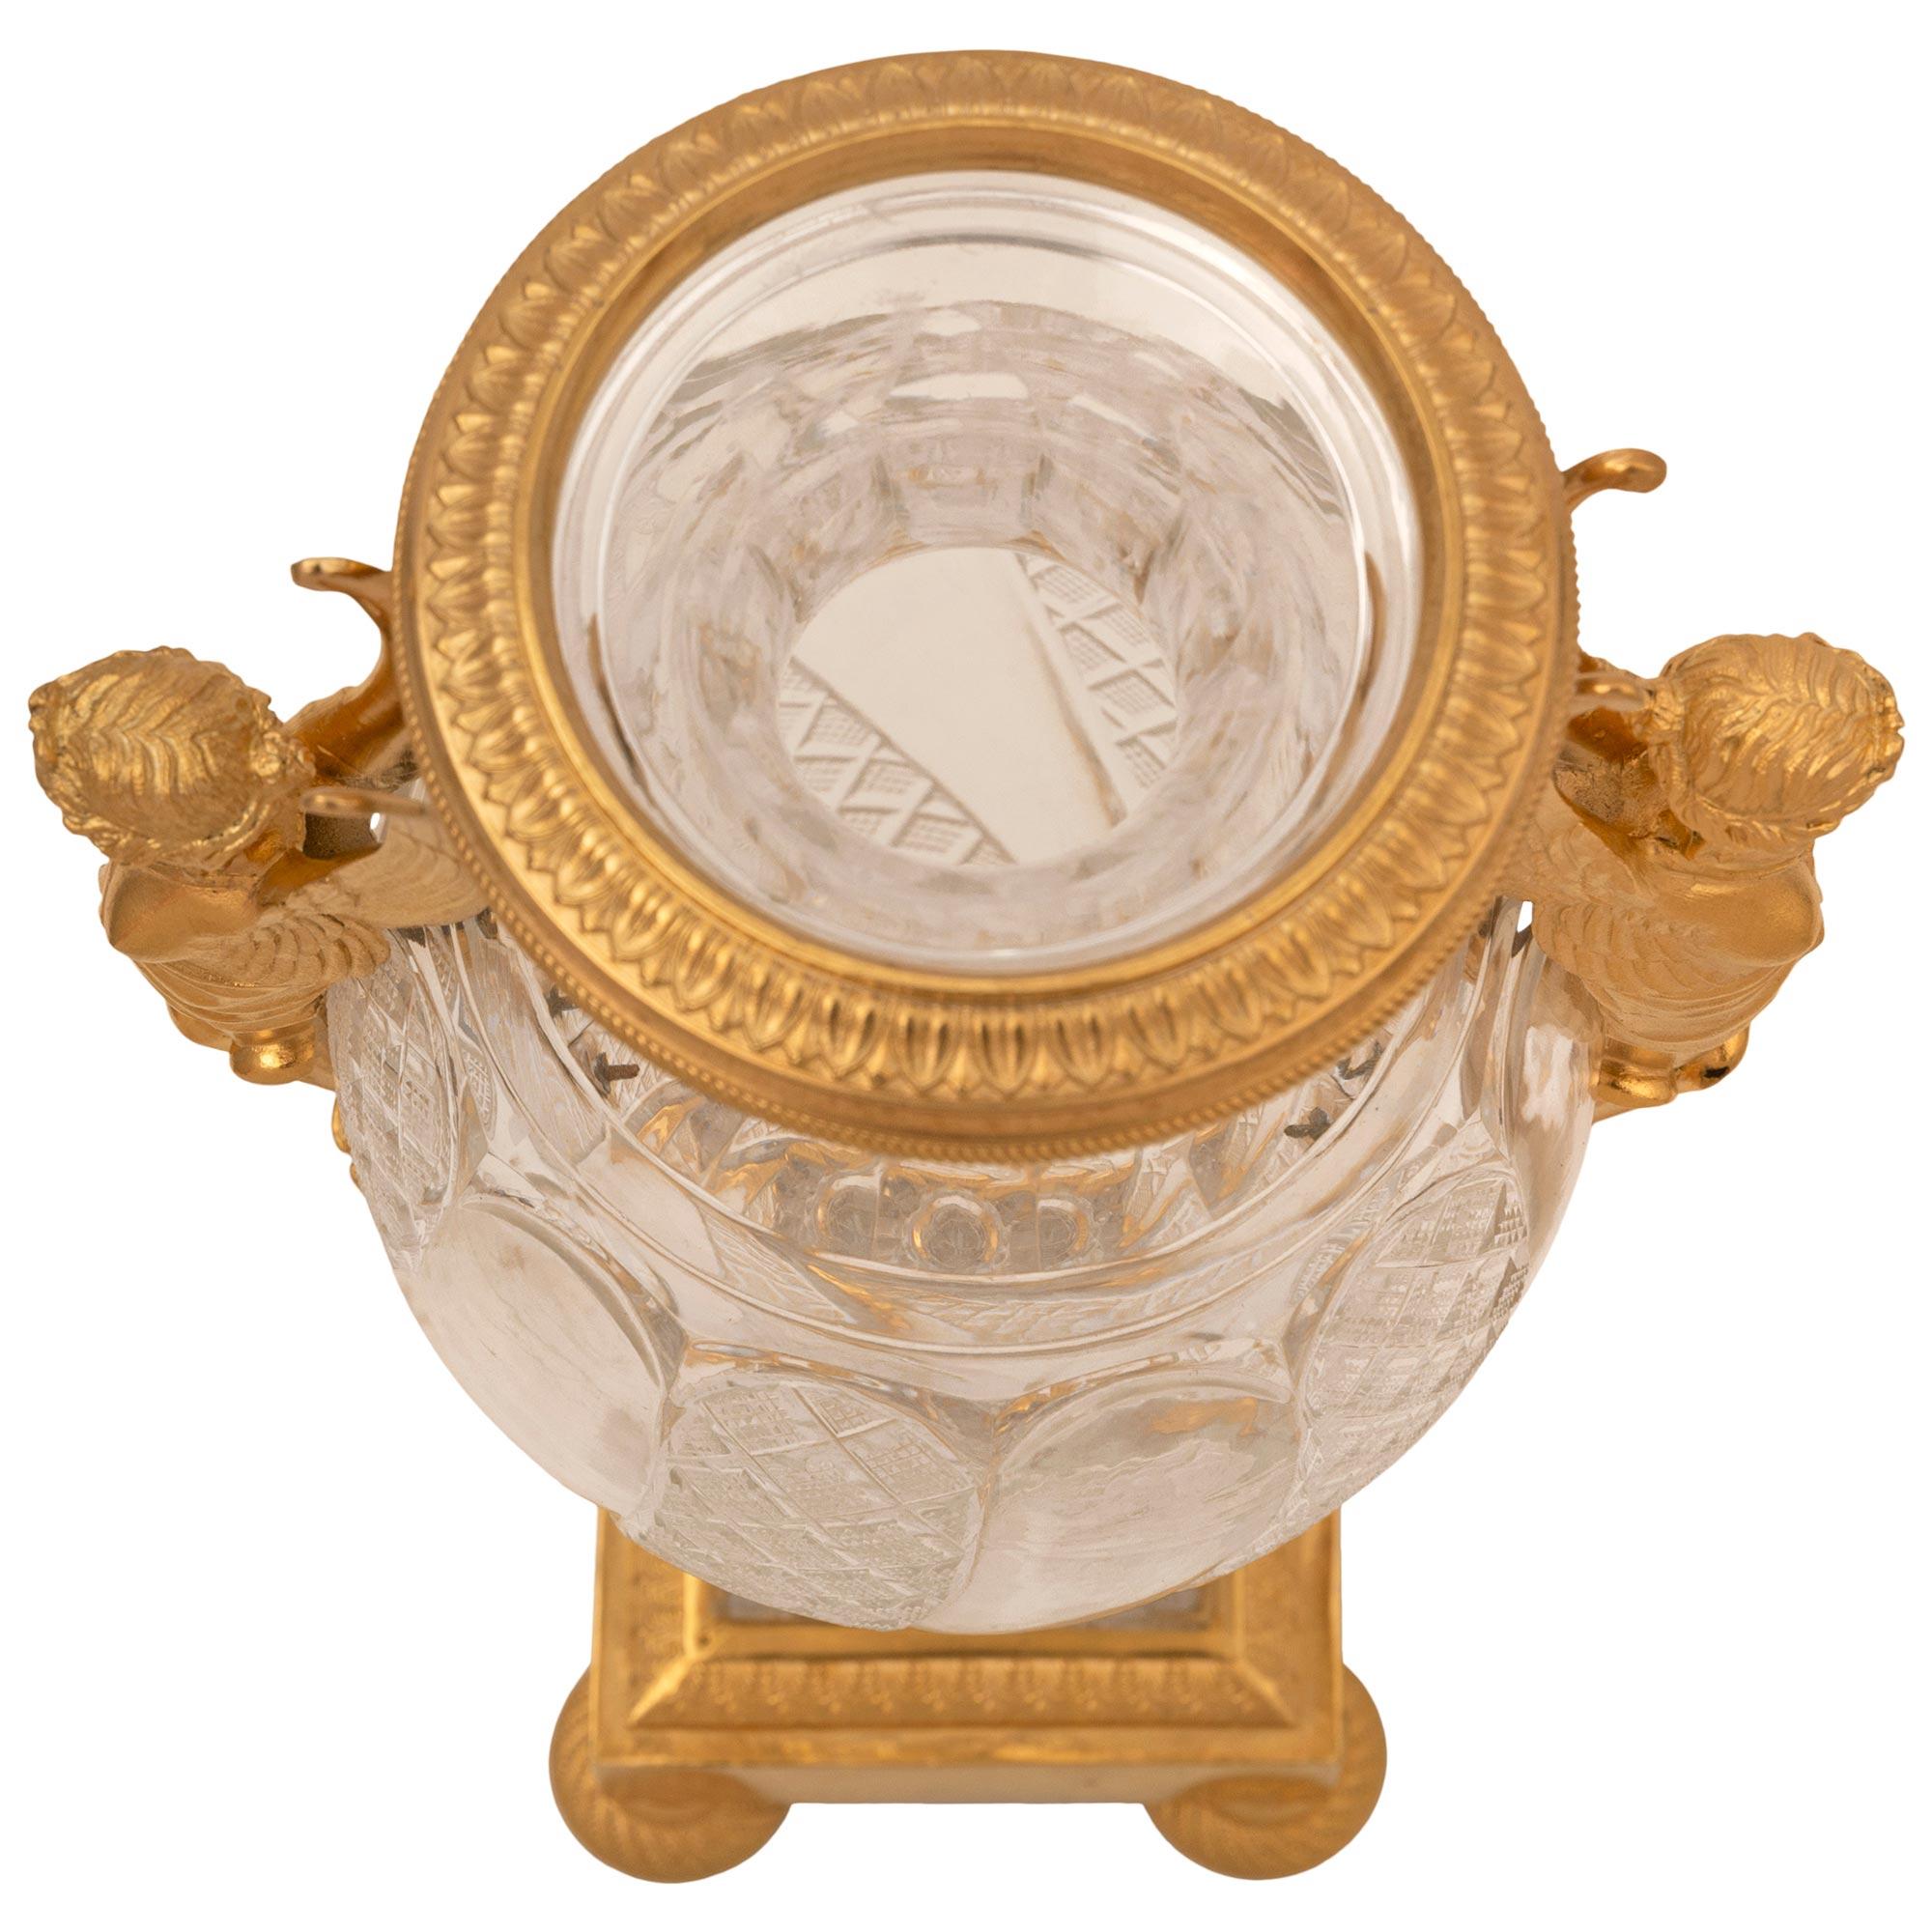 Magnifique urne néo-classique du XIXe siècle en bronze doré et cristal de Baccarat. L'urne est surmontée d'une base carrée avec d'élégants pieds en chignon, de magnifiques motifs en spirale gravés et perlés, et d'une bande de palmettes marbrées.